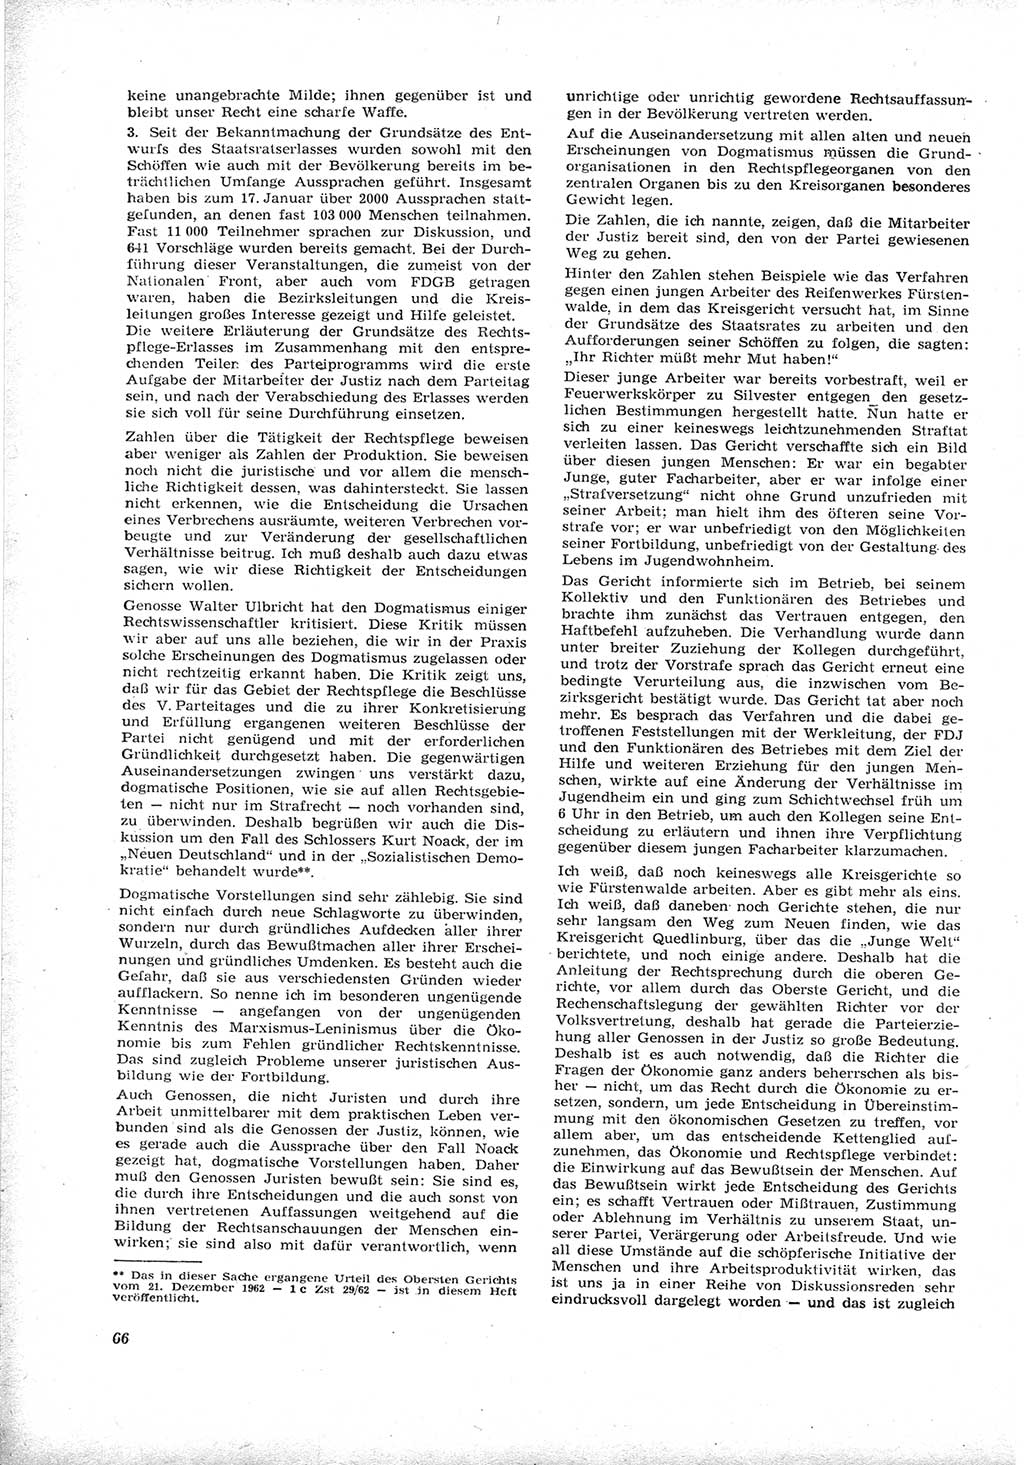 Neue Justiz (NJ), Zeitschrift für Recht und Rechtswissenschaft [Deutsche Demokratische Republik (DDR)], 17. Jahrgang 1963, Seite 66 (NJ DDR 1963, S. 66)